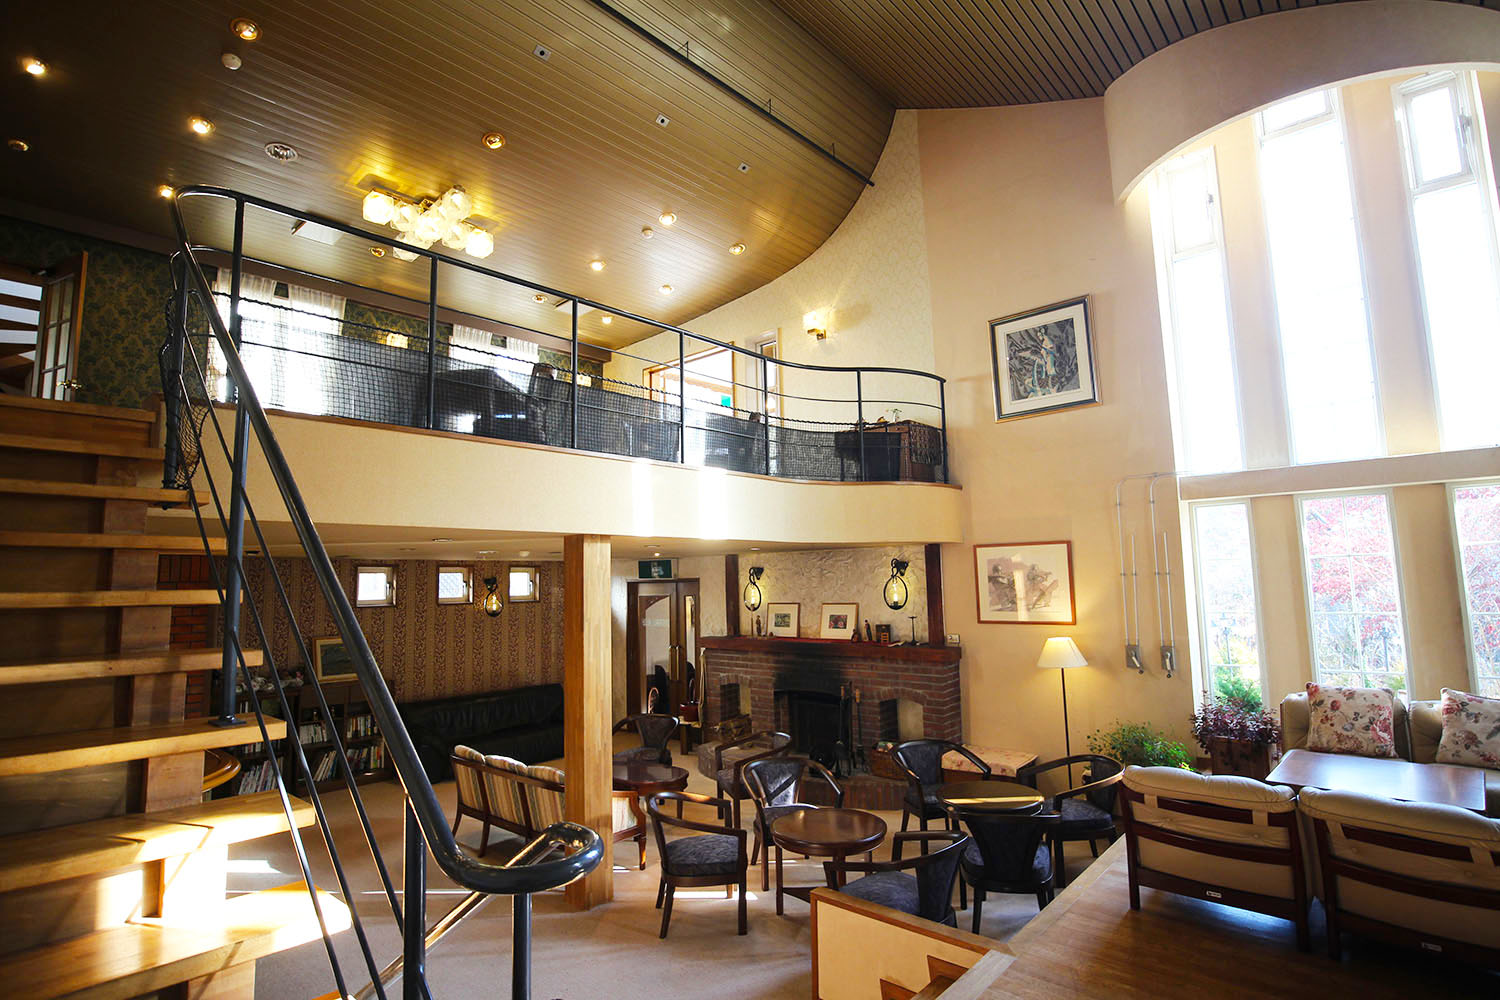 右側がホール、階段上がカフェスペース